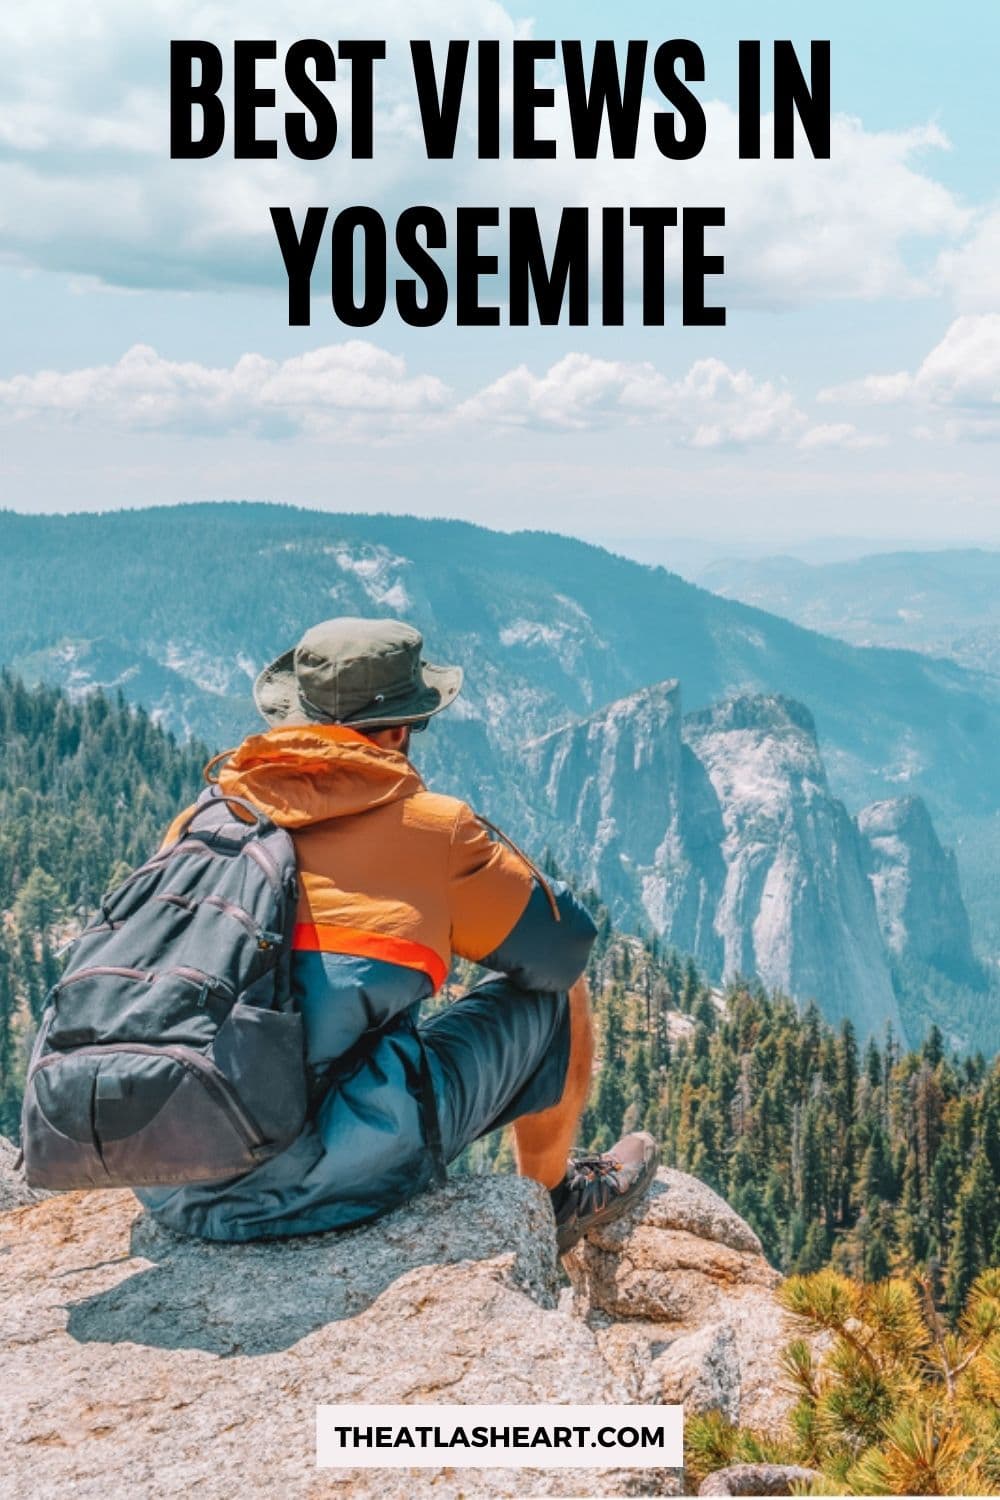 Best views in yosemite